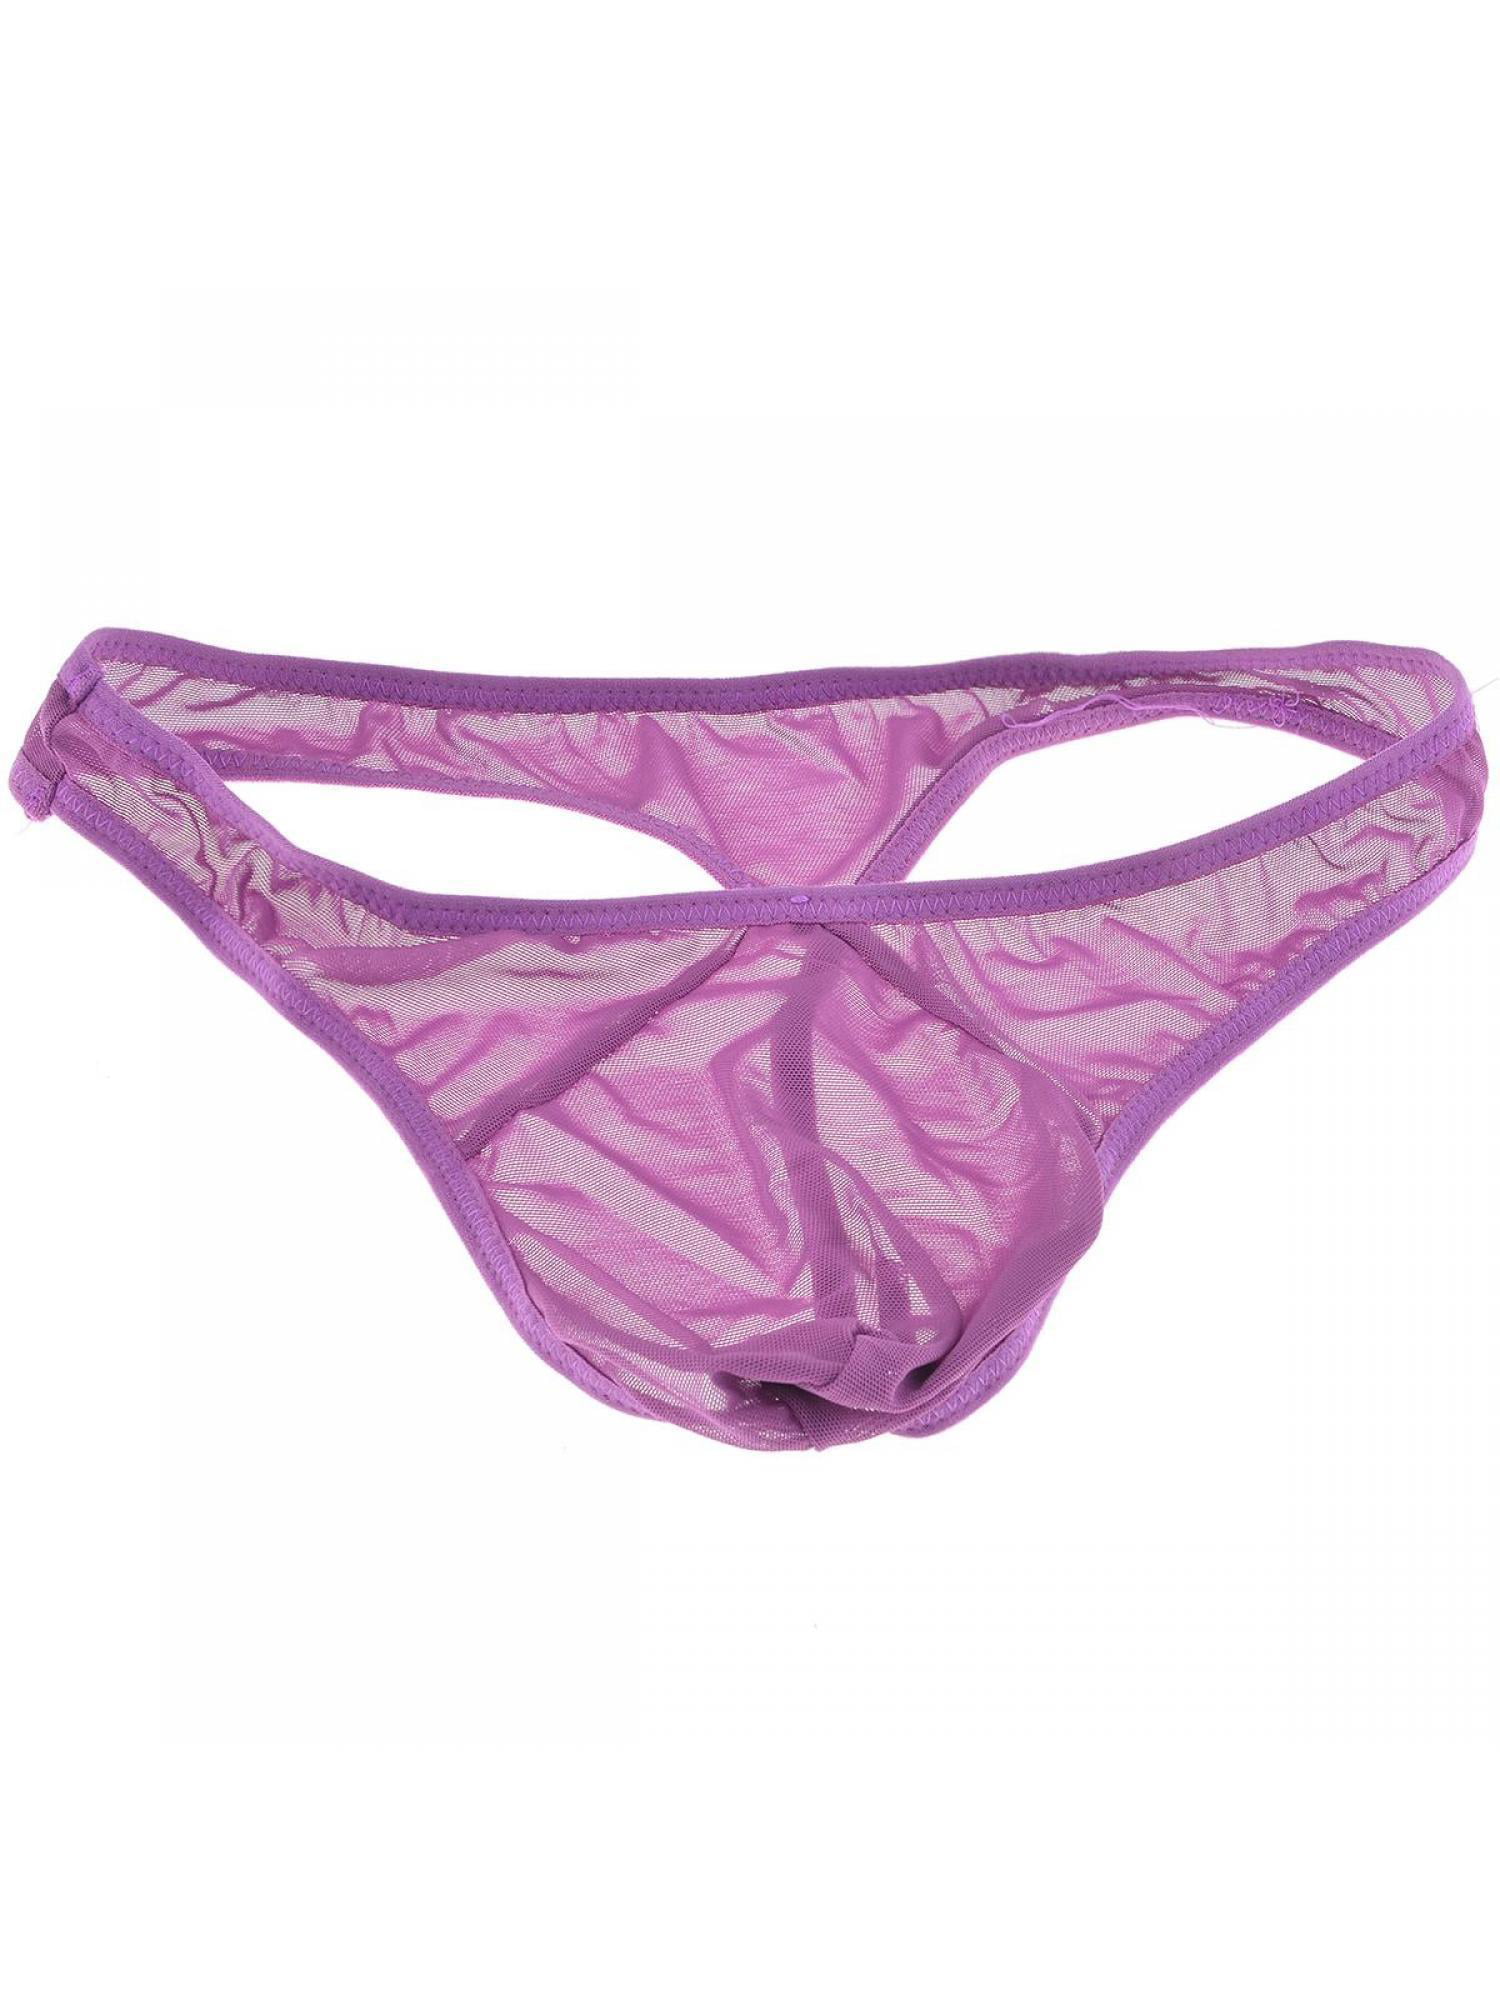 Men's Hot Fashion Net Yarn Underpants Underwear 3 Colors | Walmart Canada